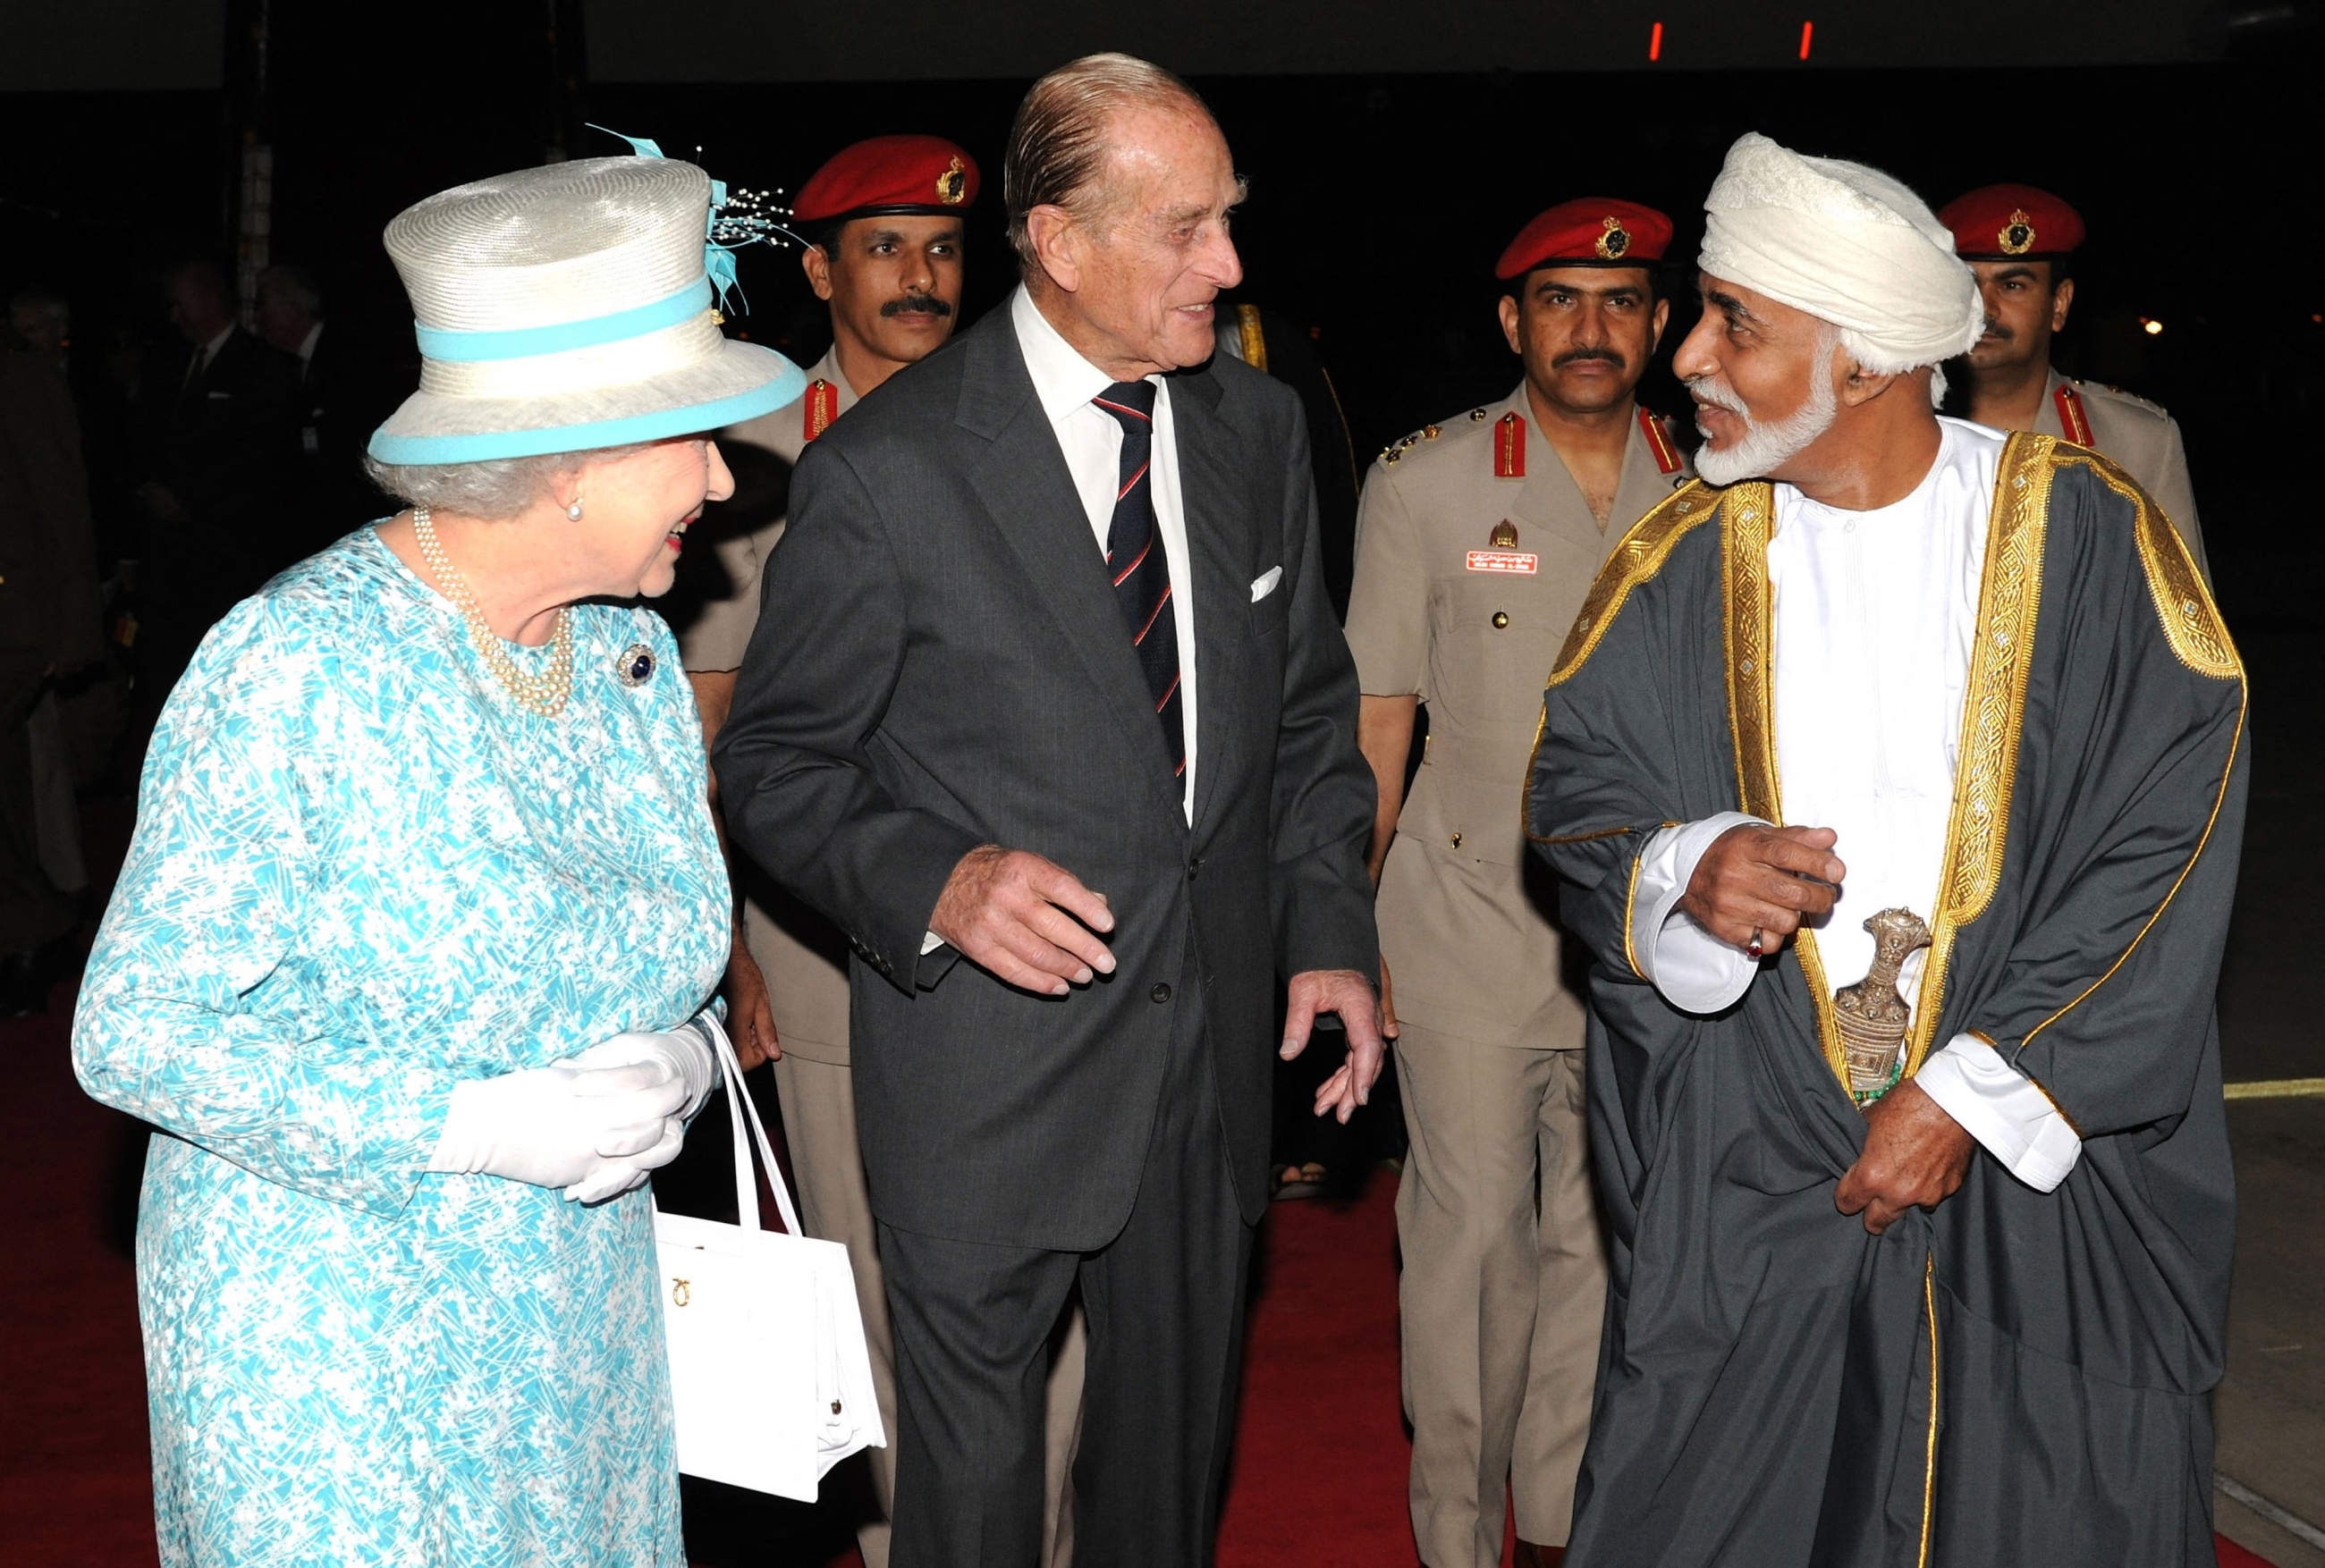 L’ancien sultan d’Oman, Qabous ben Said, accueille la reine britannique Elizabeth II et son mari le prince Philip à Mascate en novembre 2010 (AFP)